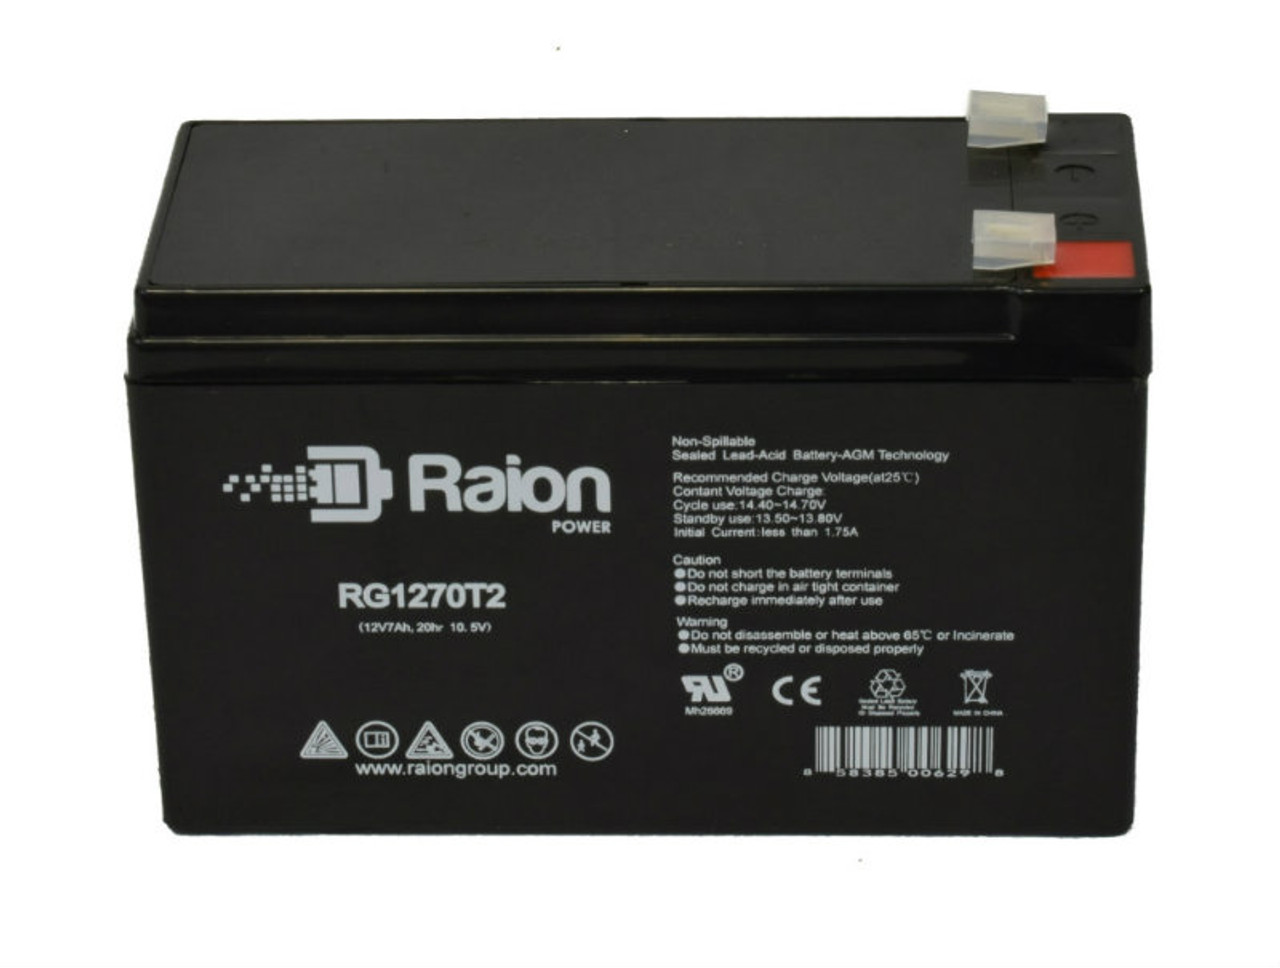 Raion Power RG1270T2 12V 7Ah Lead Acid Battery for SAITE BT-12M7.0AT